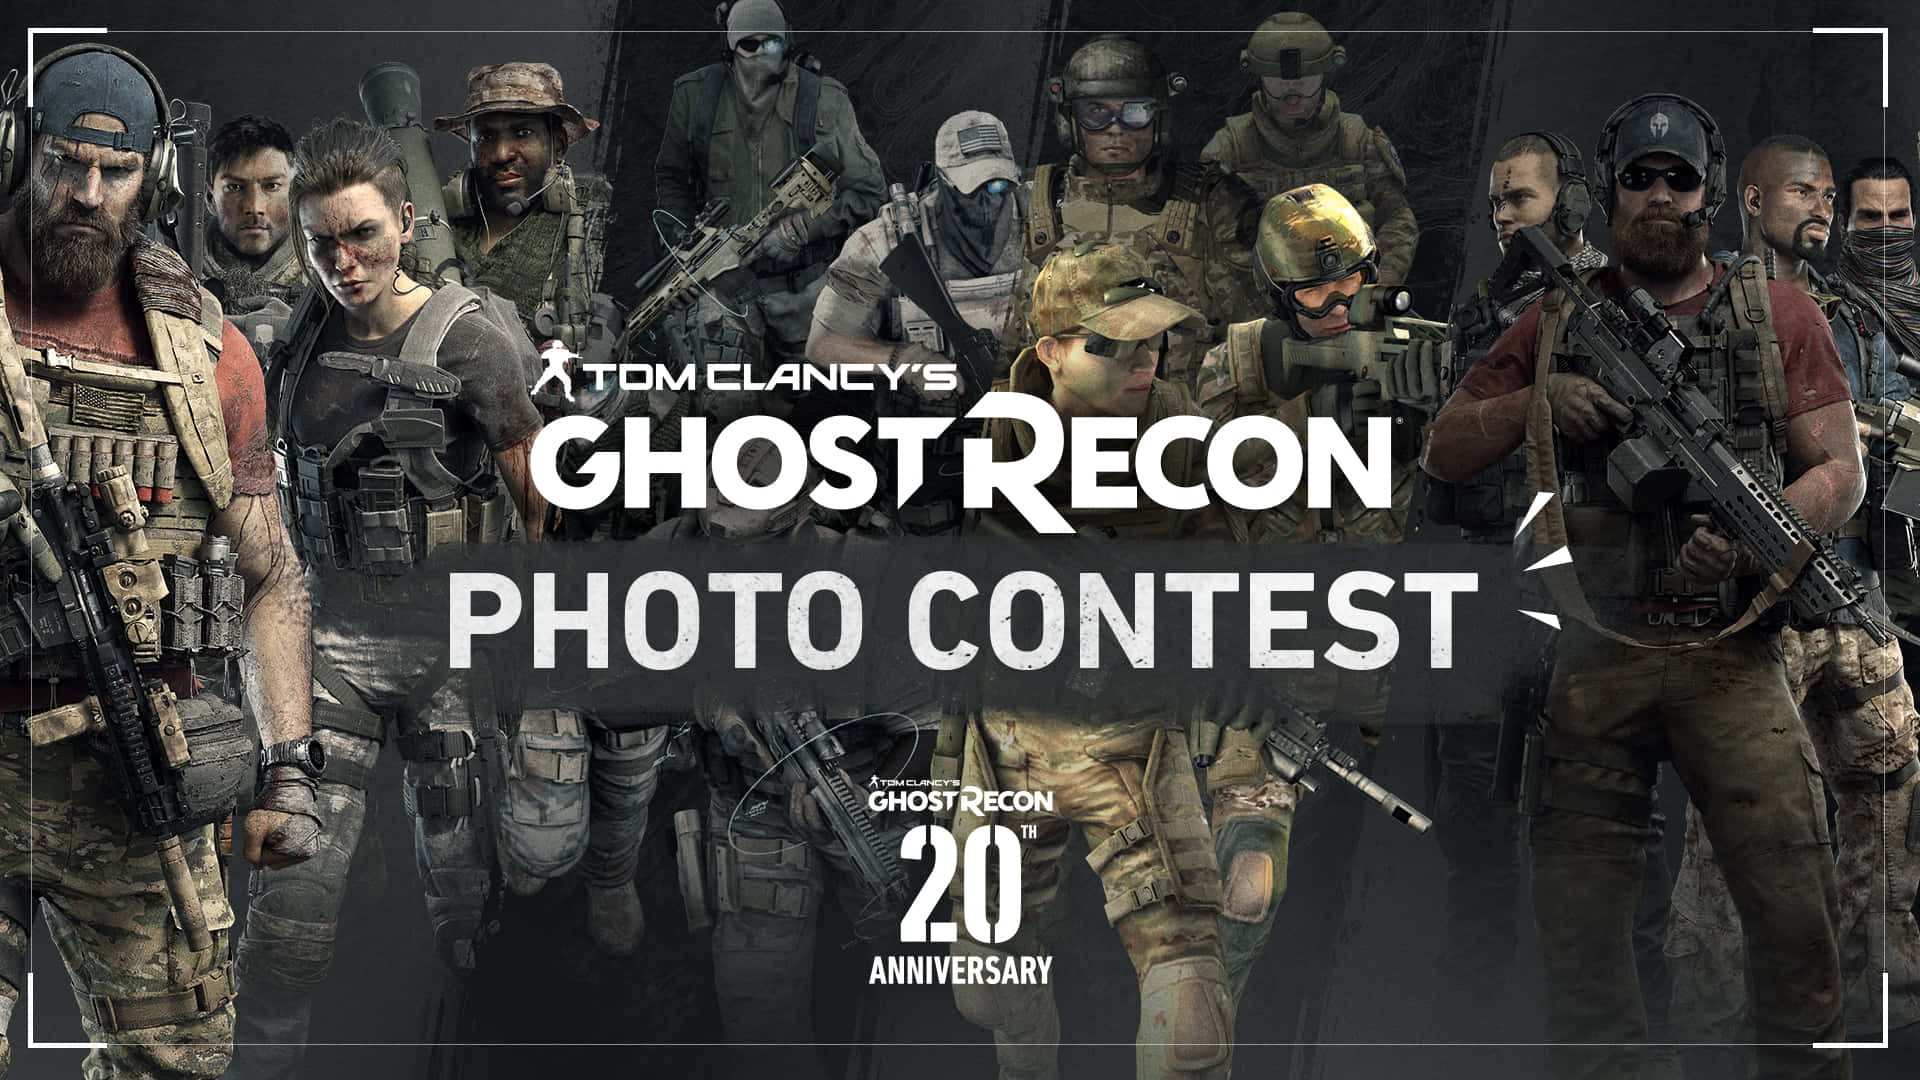 Ghost Recon Photo Contest